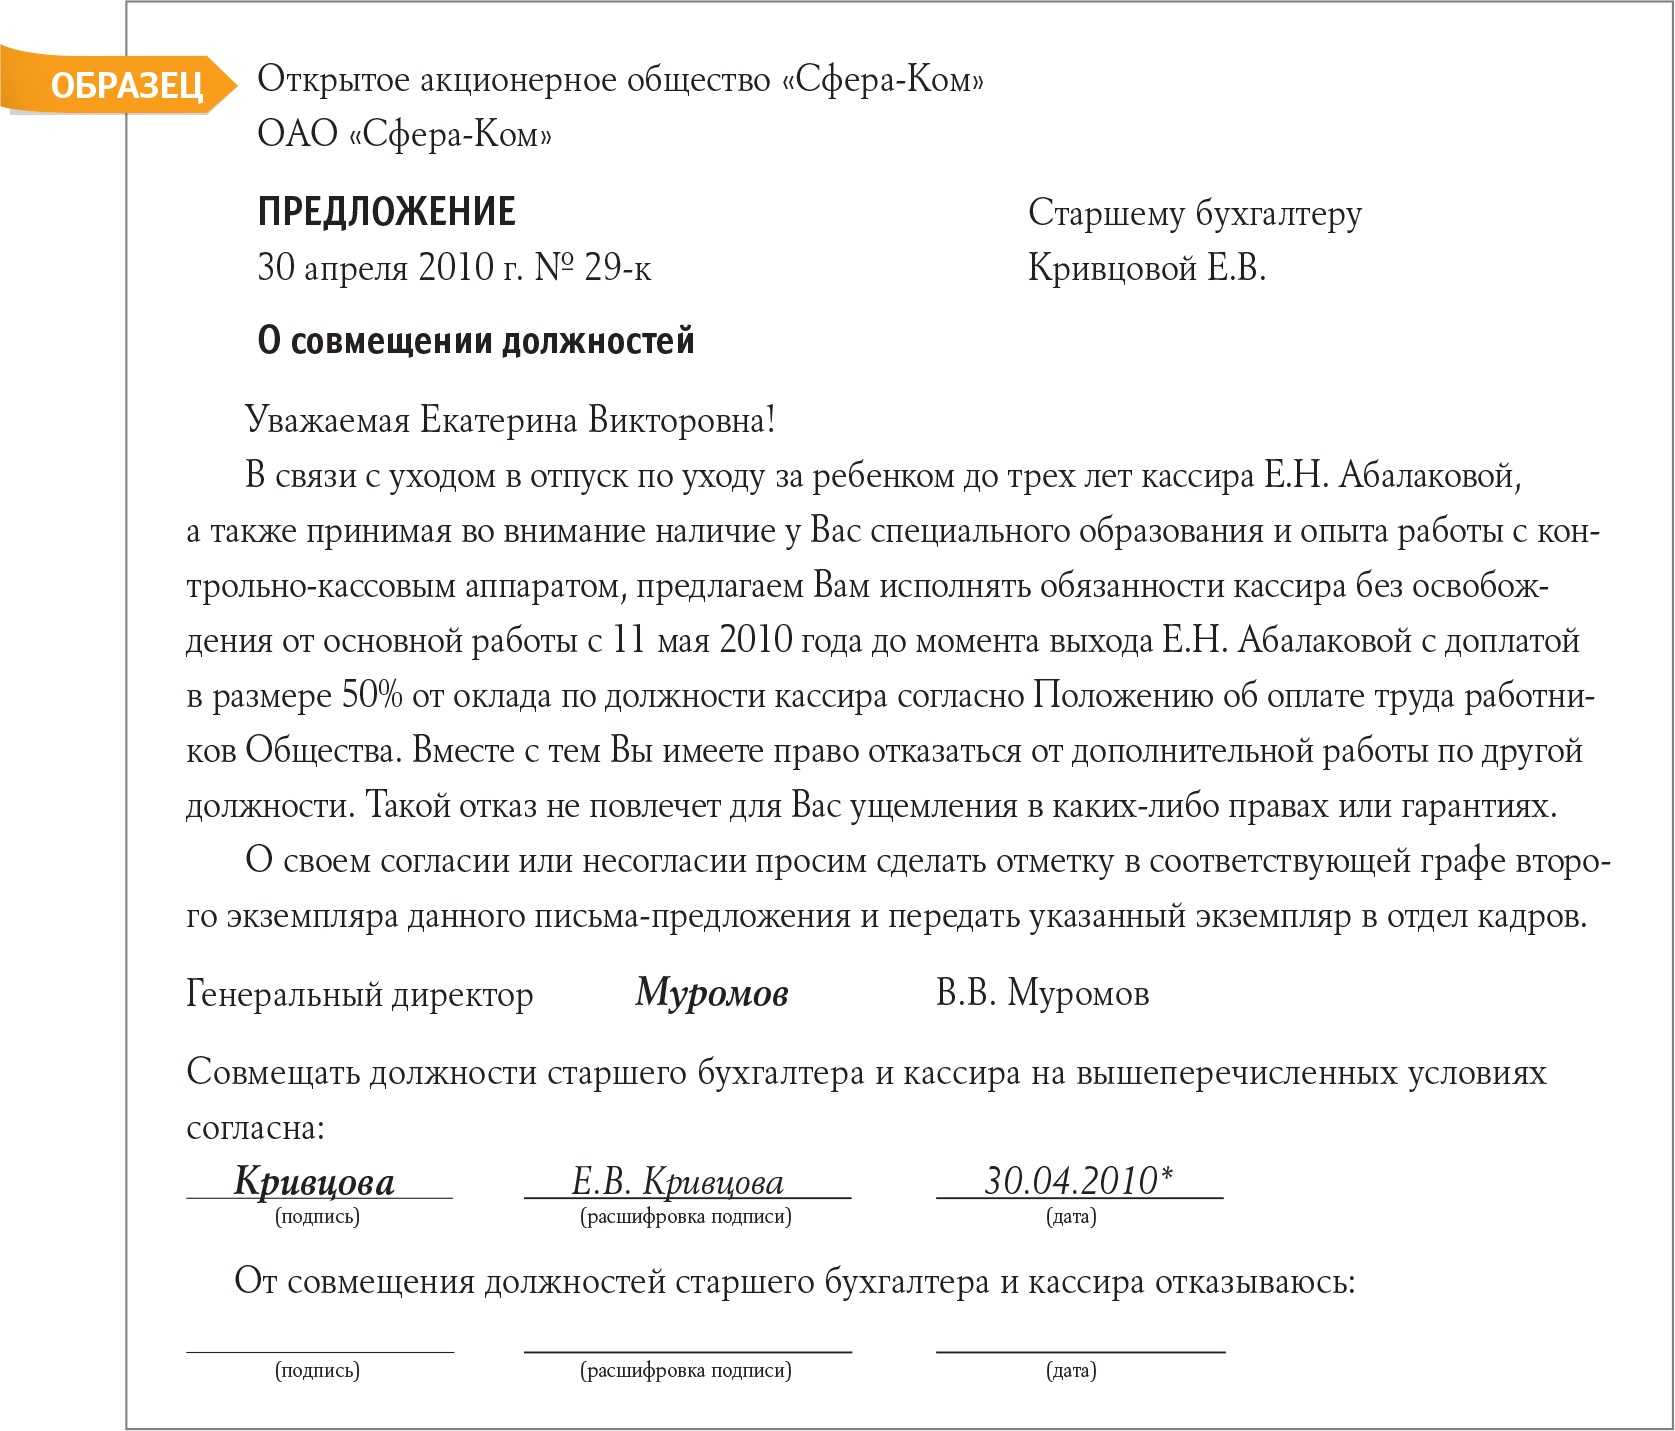 Внесение изменений в должностную инструкцию: порядок внесения, основания, образец приказа :: businessman.ru